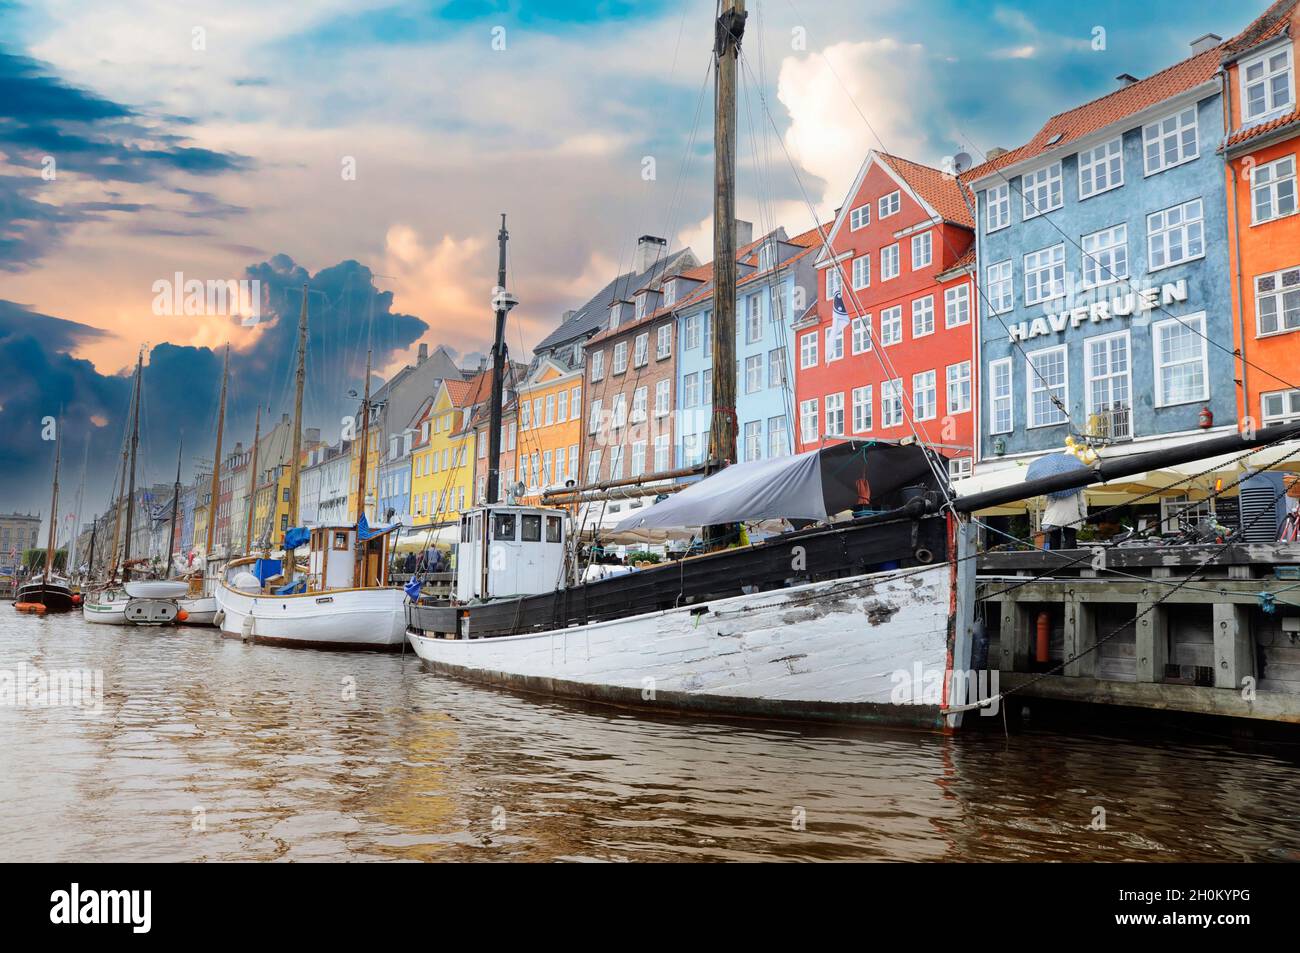 Canal de Nyhavn avec des navires au coucher du soleil sous un ciel partiellement nuageux Copenhague, Danemark. Banque D'Images